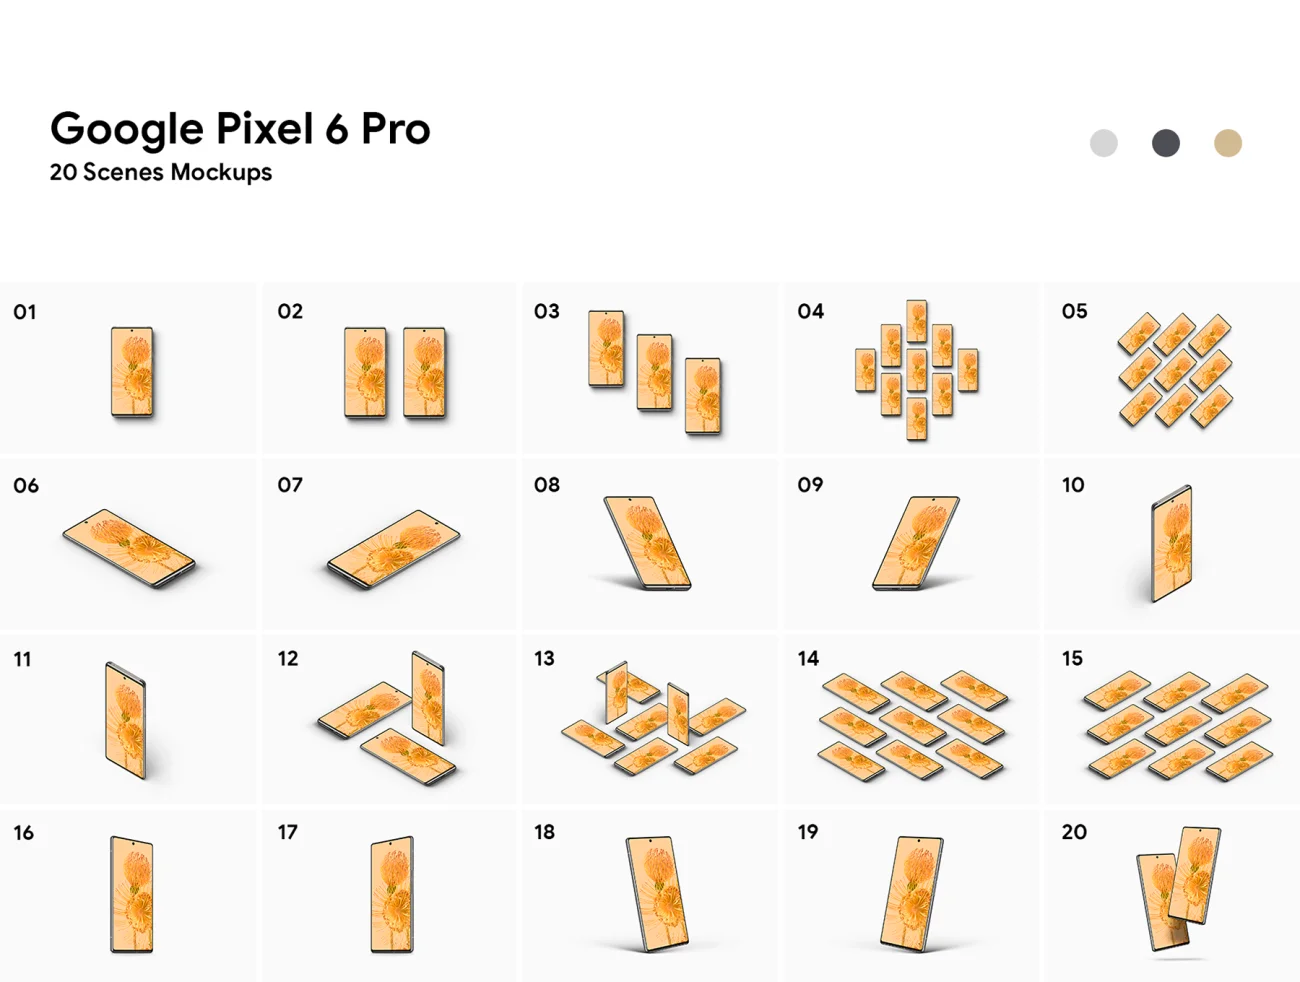 40款谷歌6Pro手机样机分层素材 Google Pixel 6 Pro - 40 Mockups  .psd-产品展示、手机模型、样机-到位啦UI